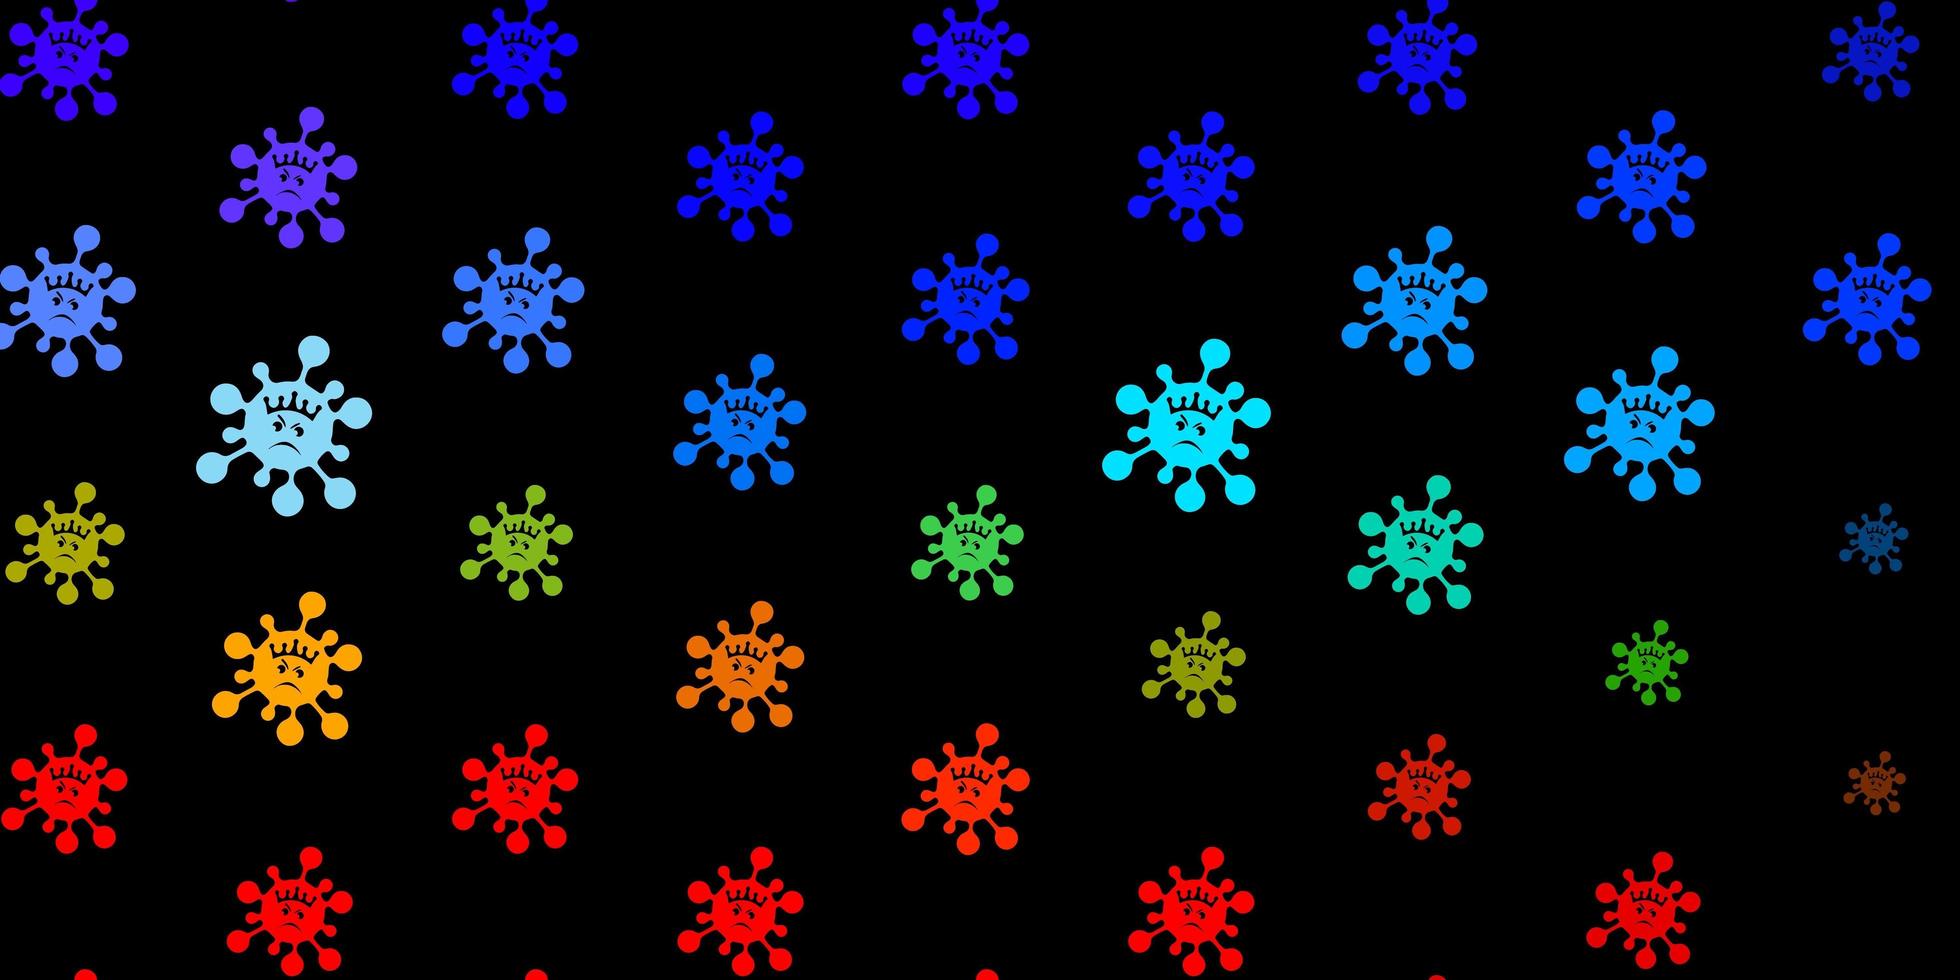 sfondo vettoriale multicolore scuro con simboli di virus.